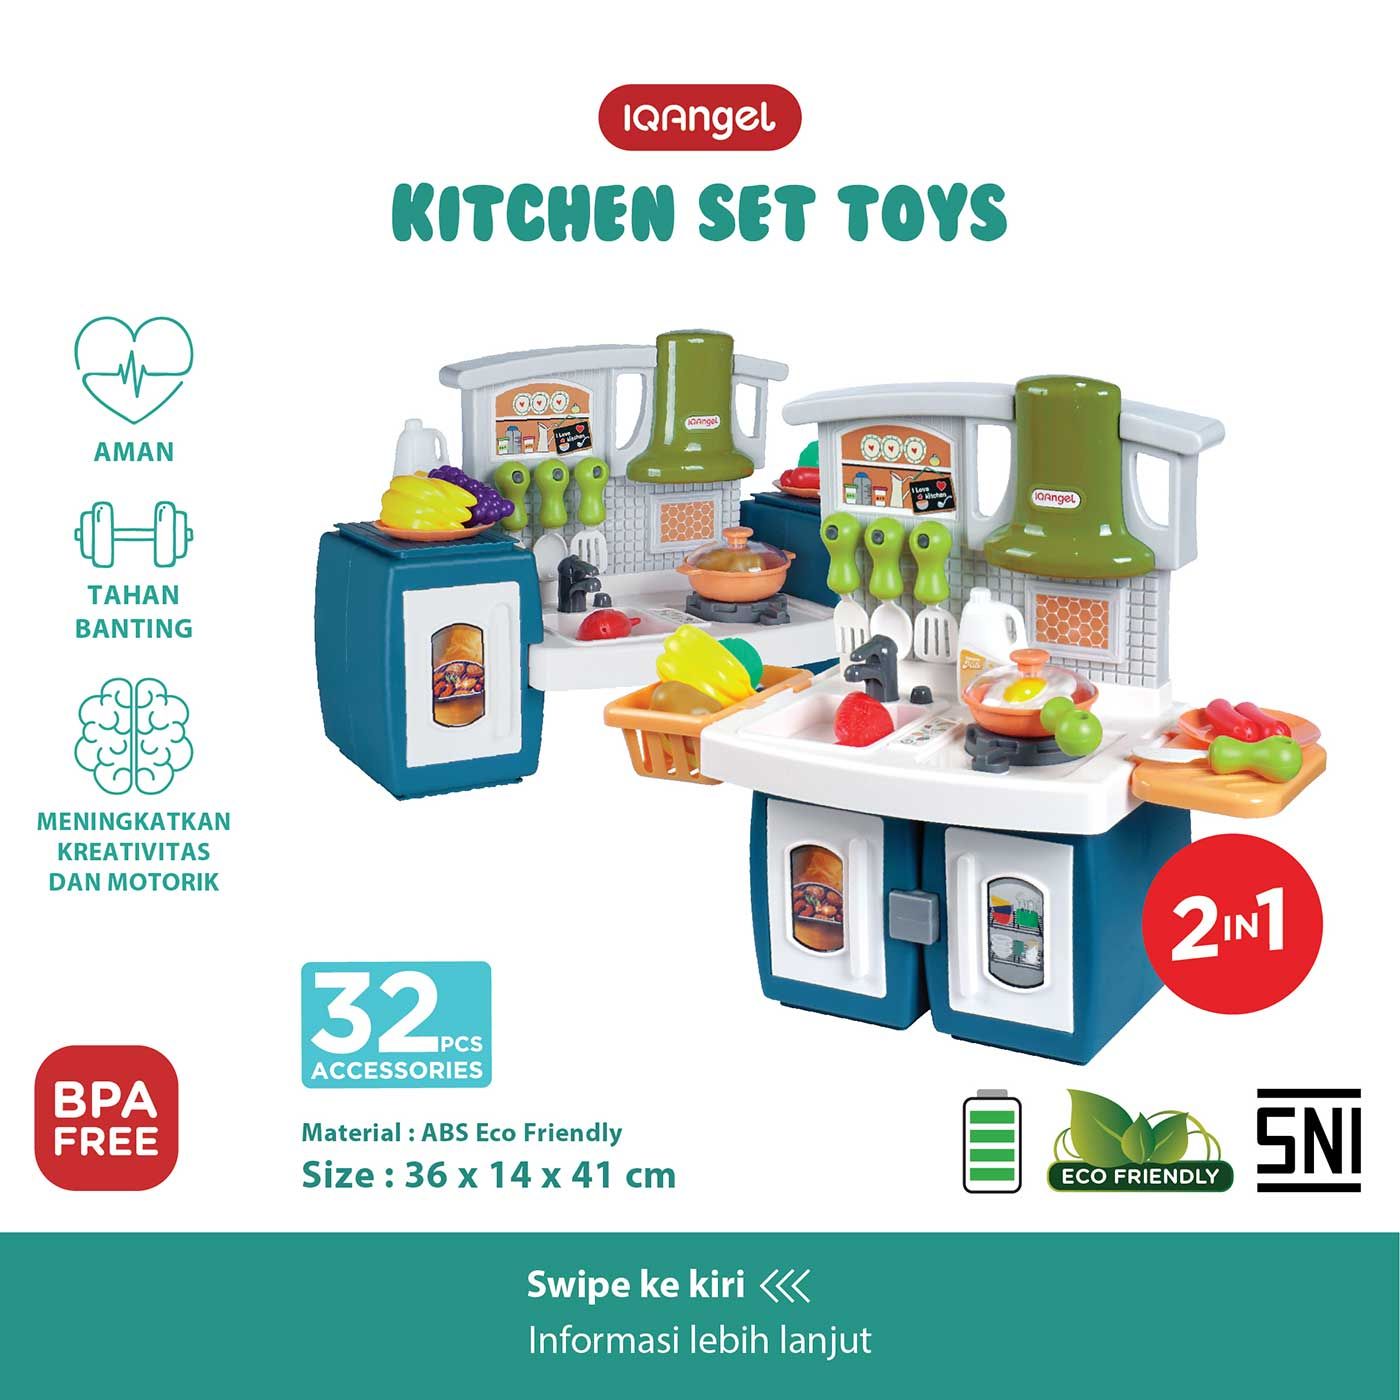 IQ Angel Kitchen Set Toys - 11